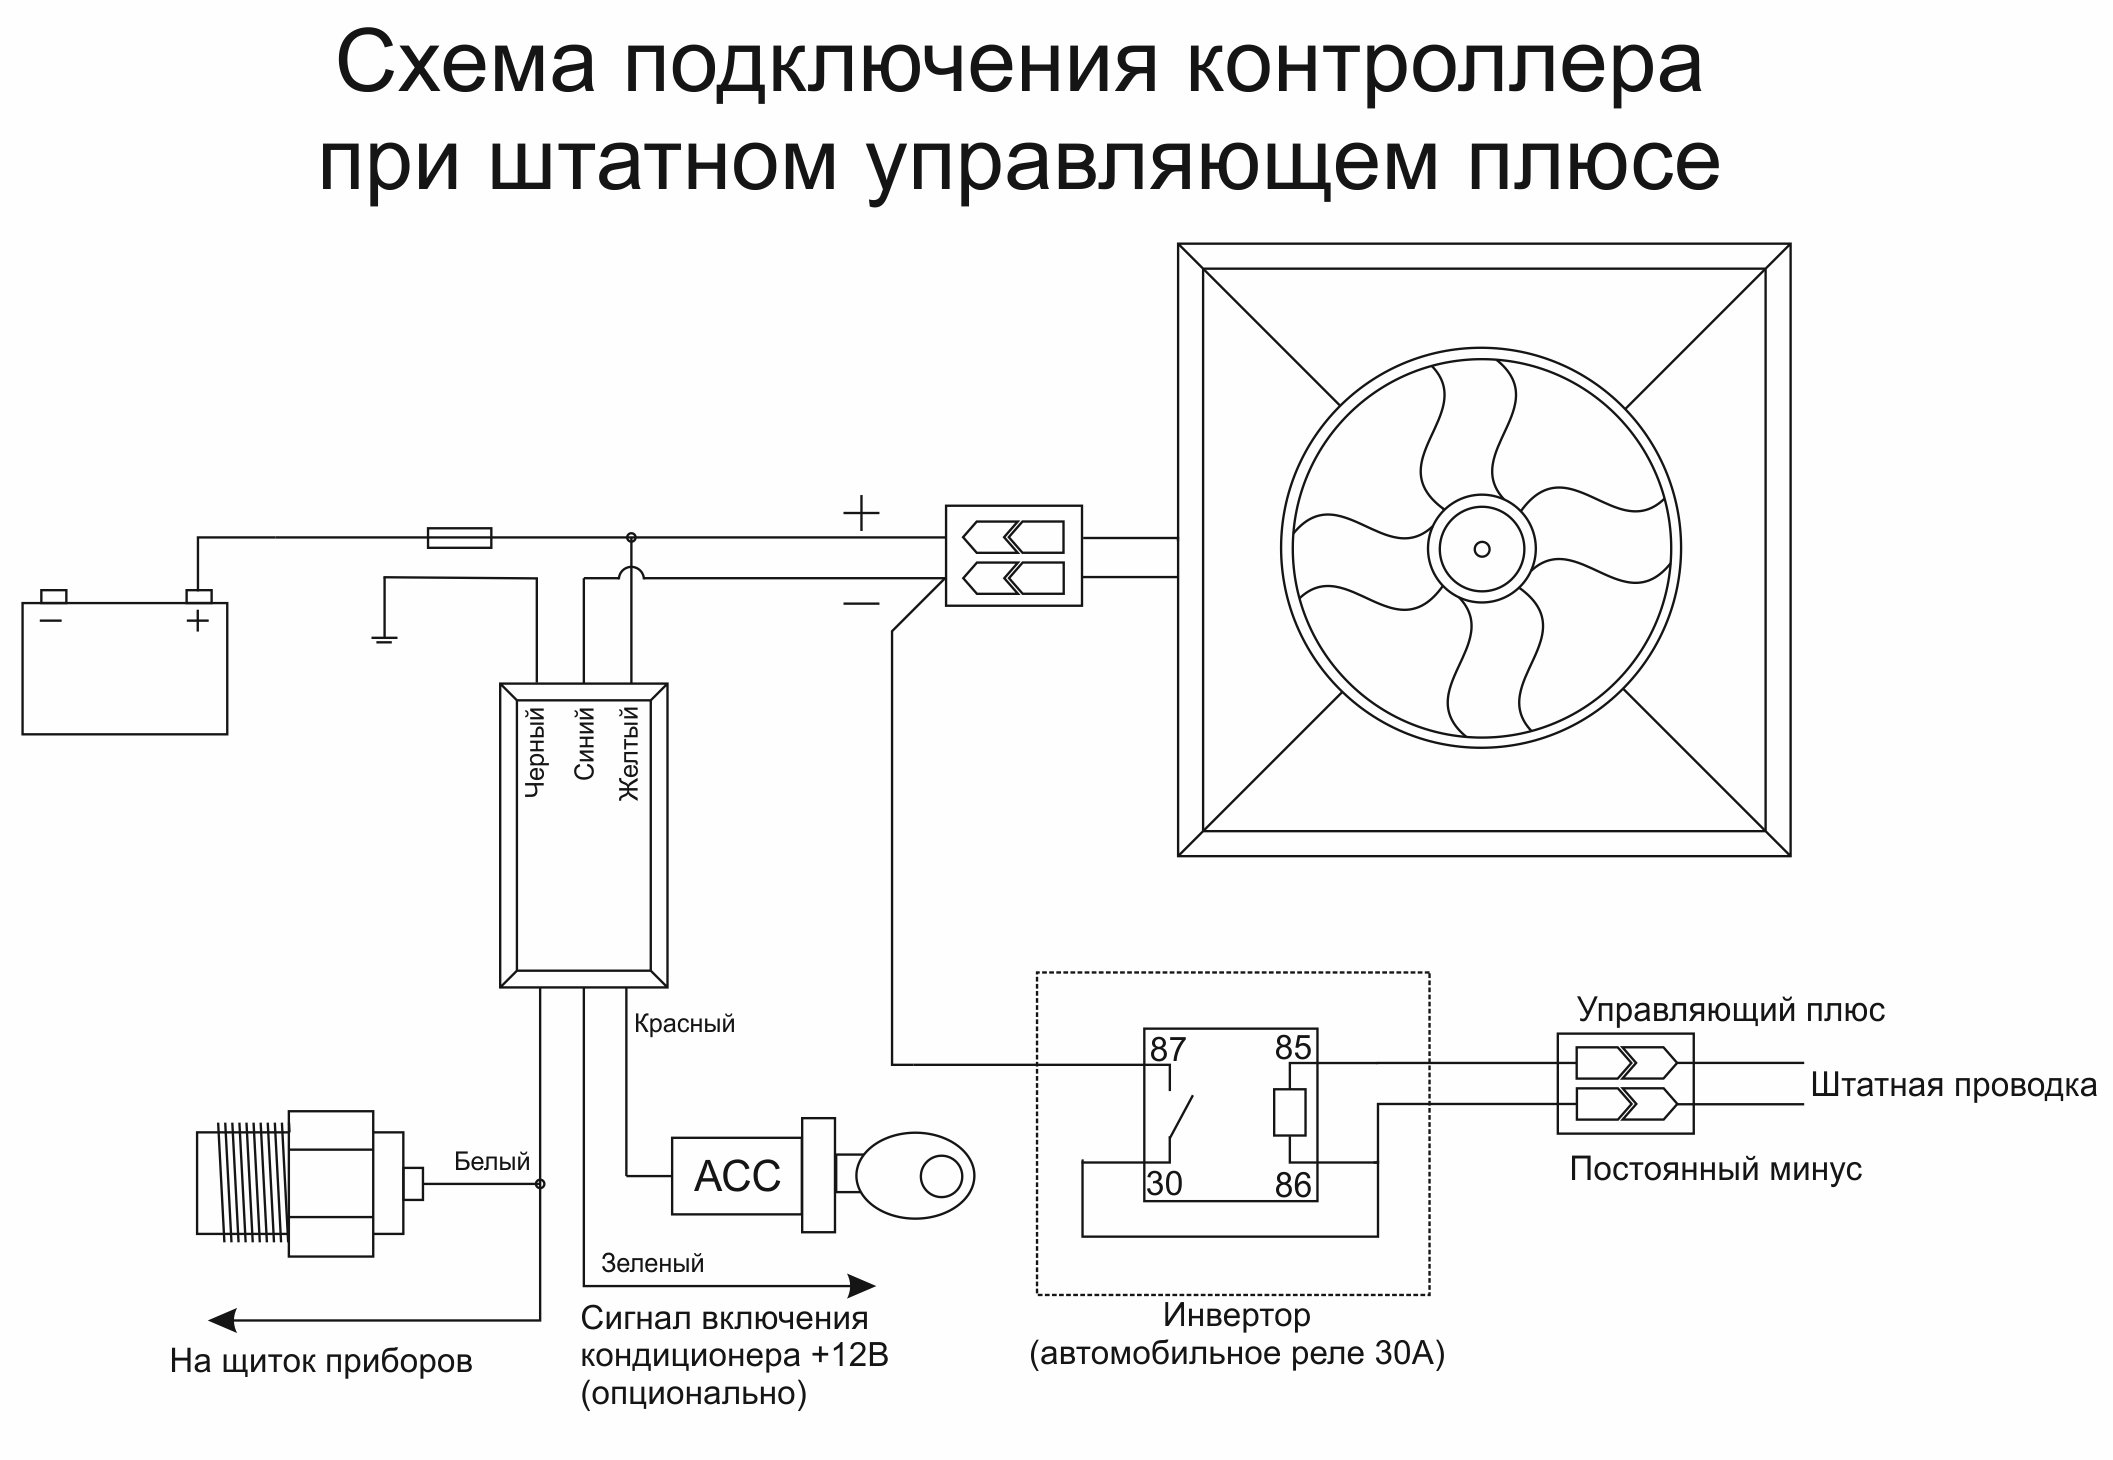 Подключения вентилятора охлаждения радиатора схема подключения